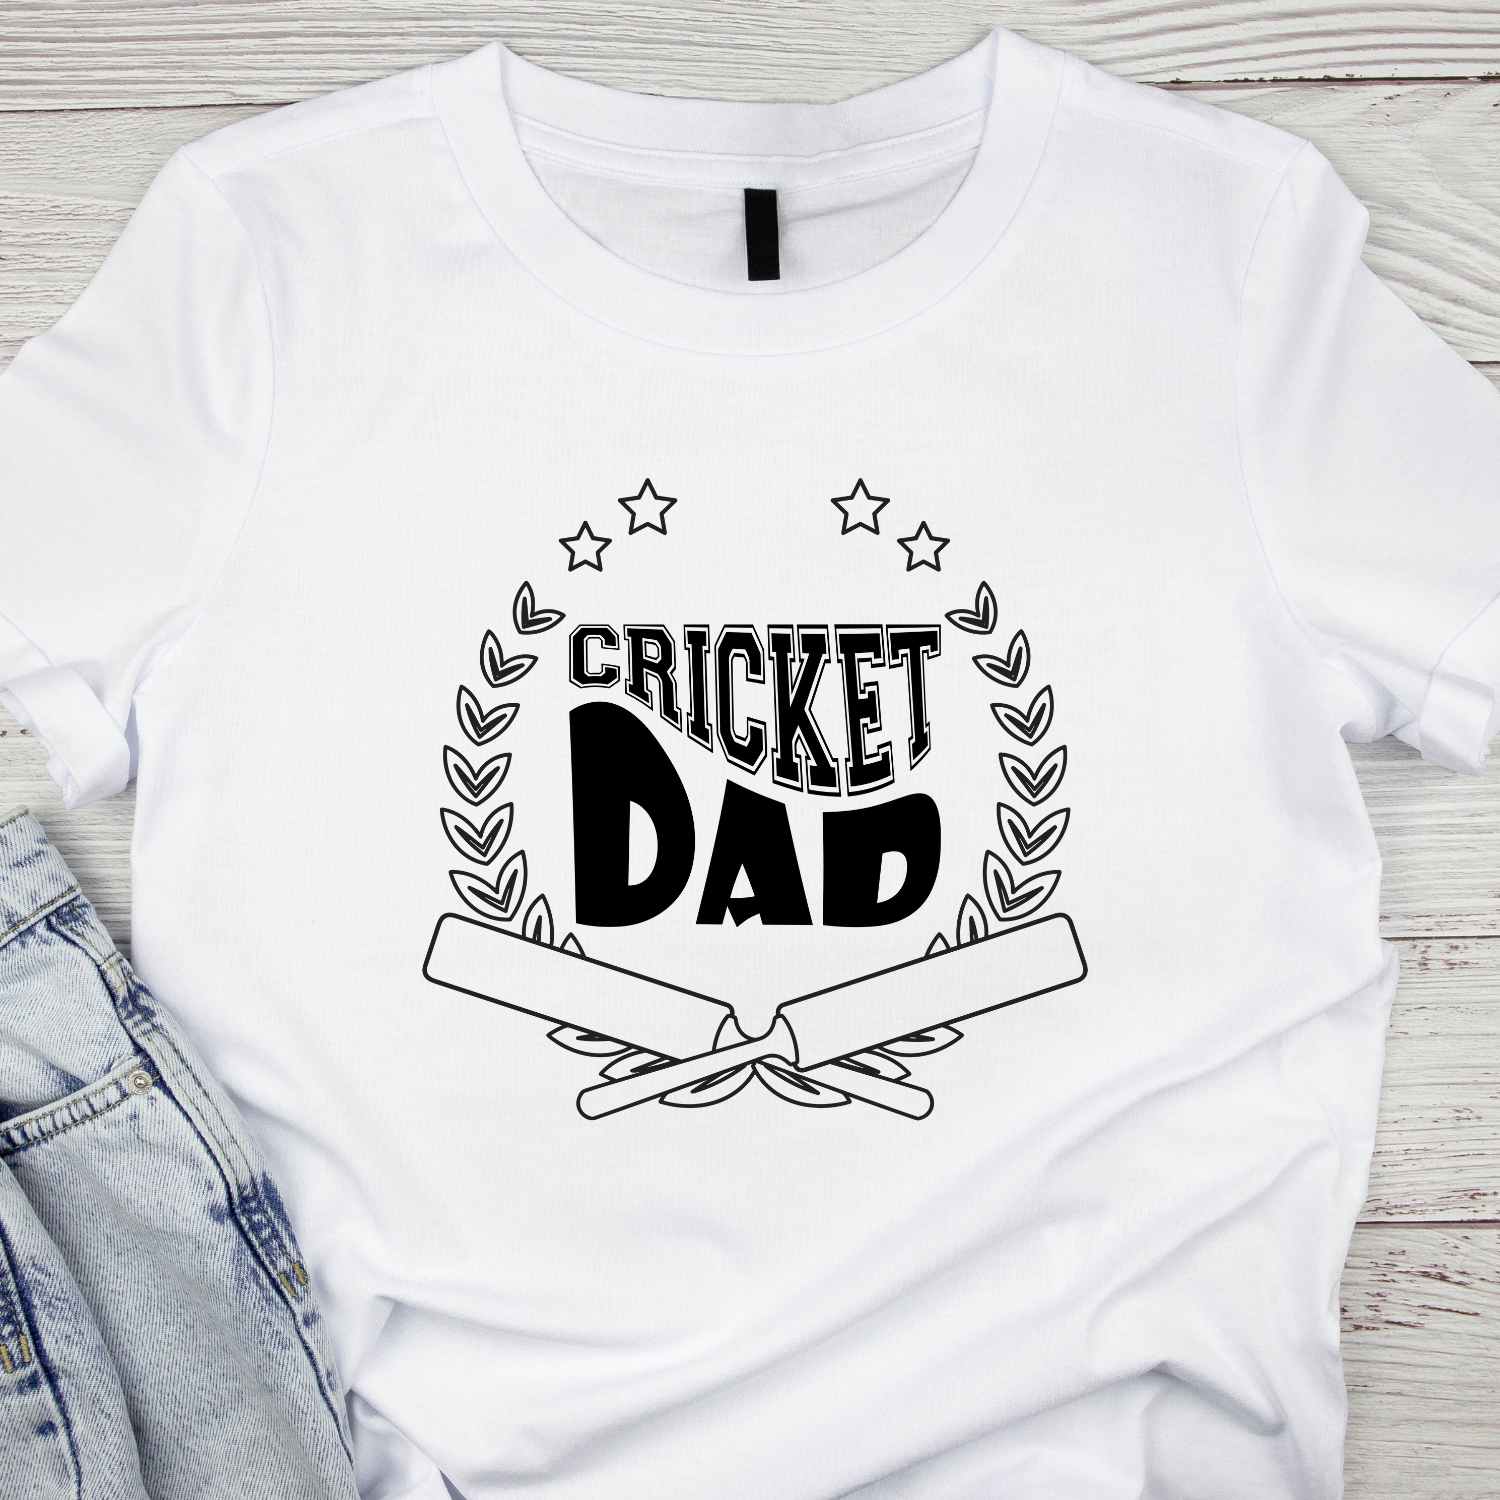 Cricket Dad T-shirt Design for Men